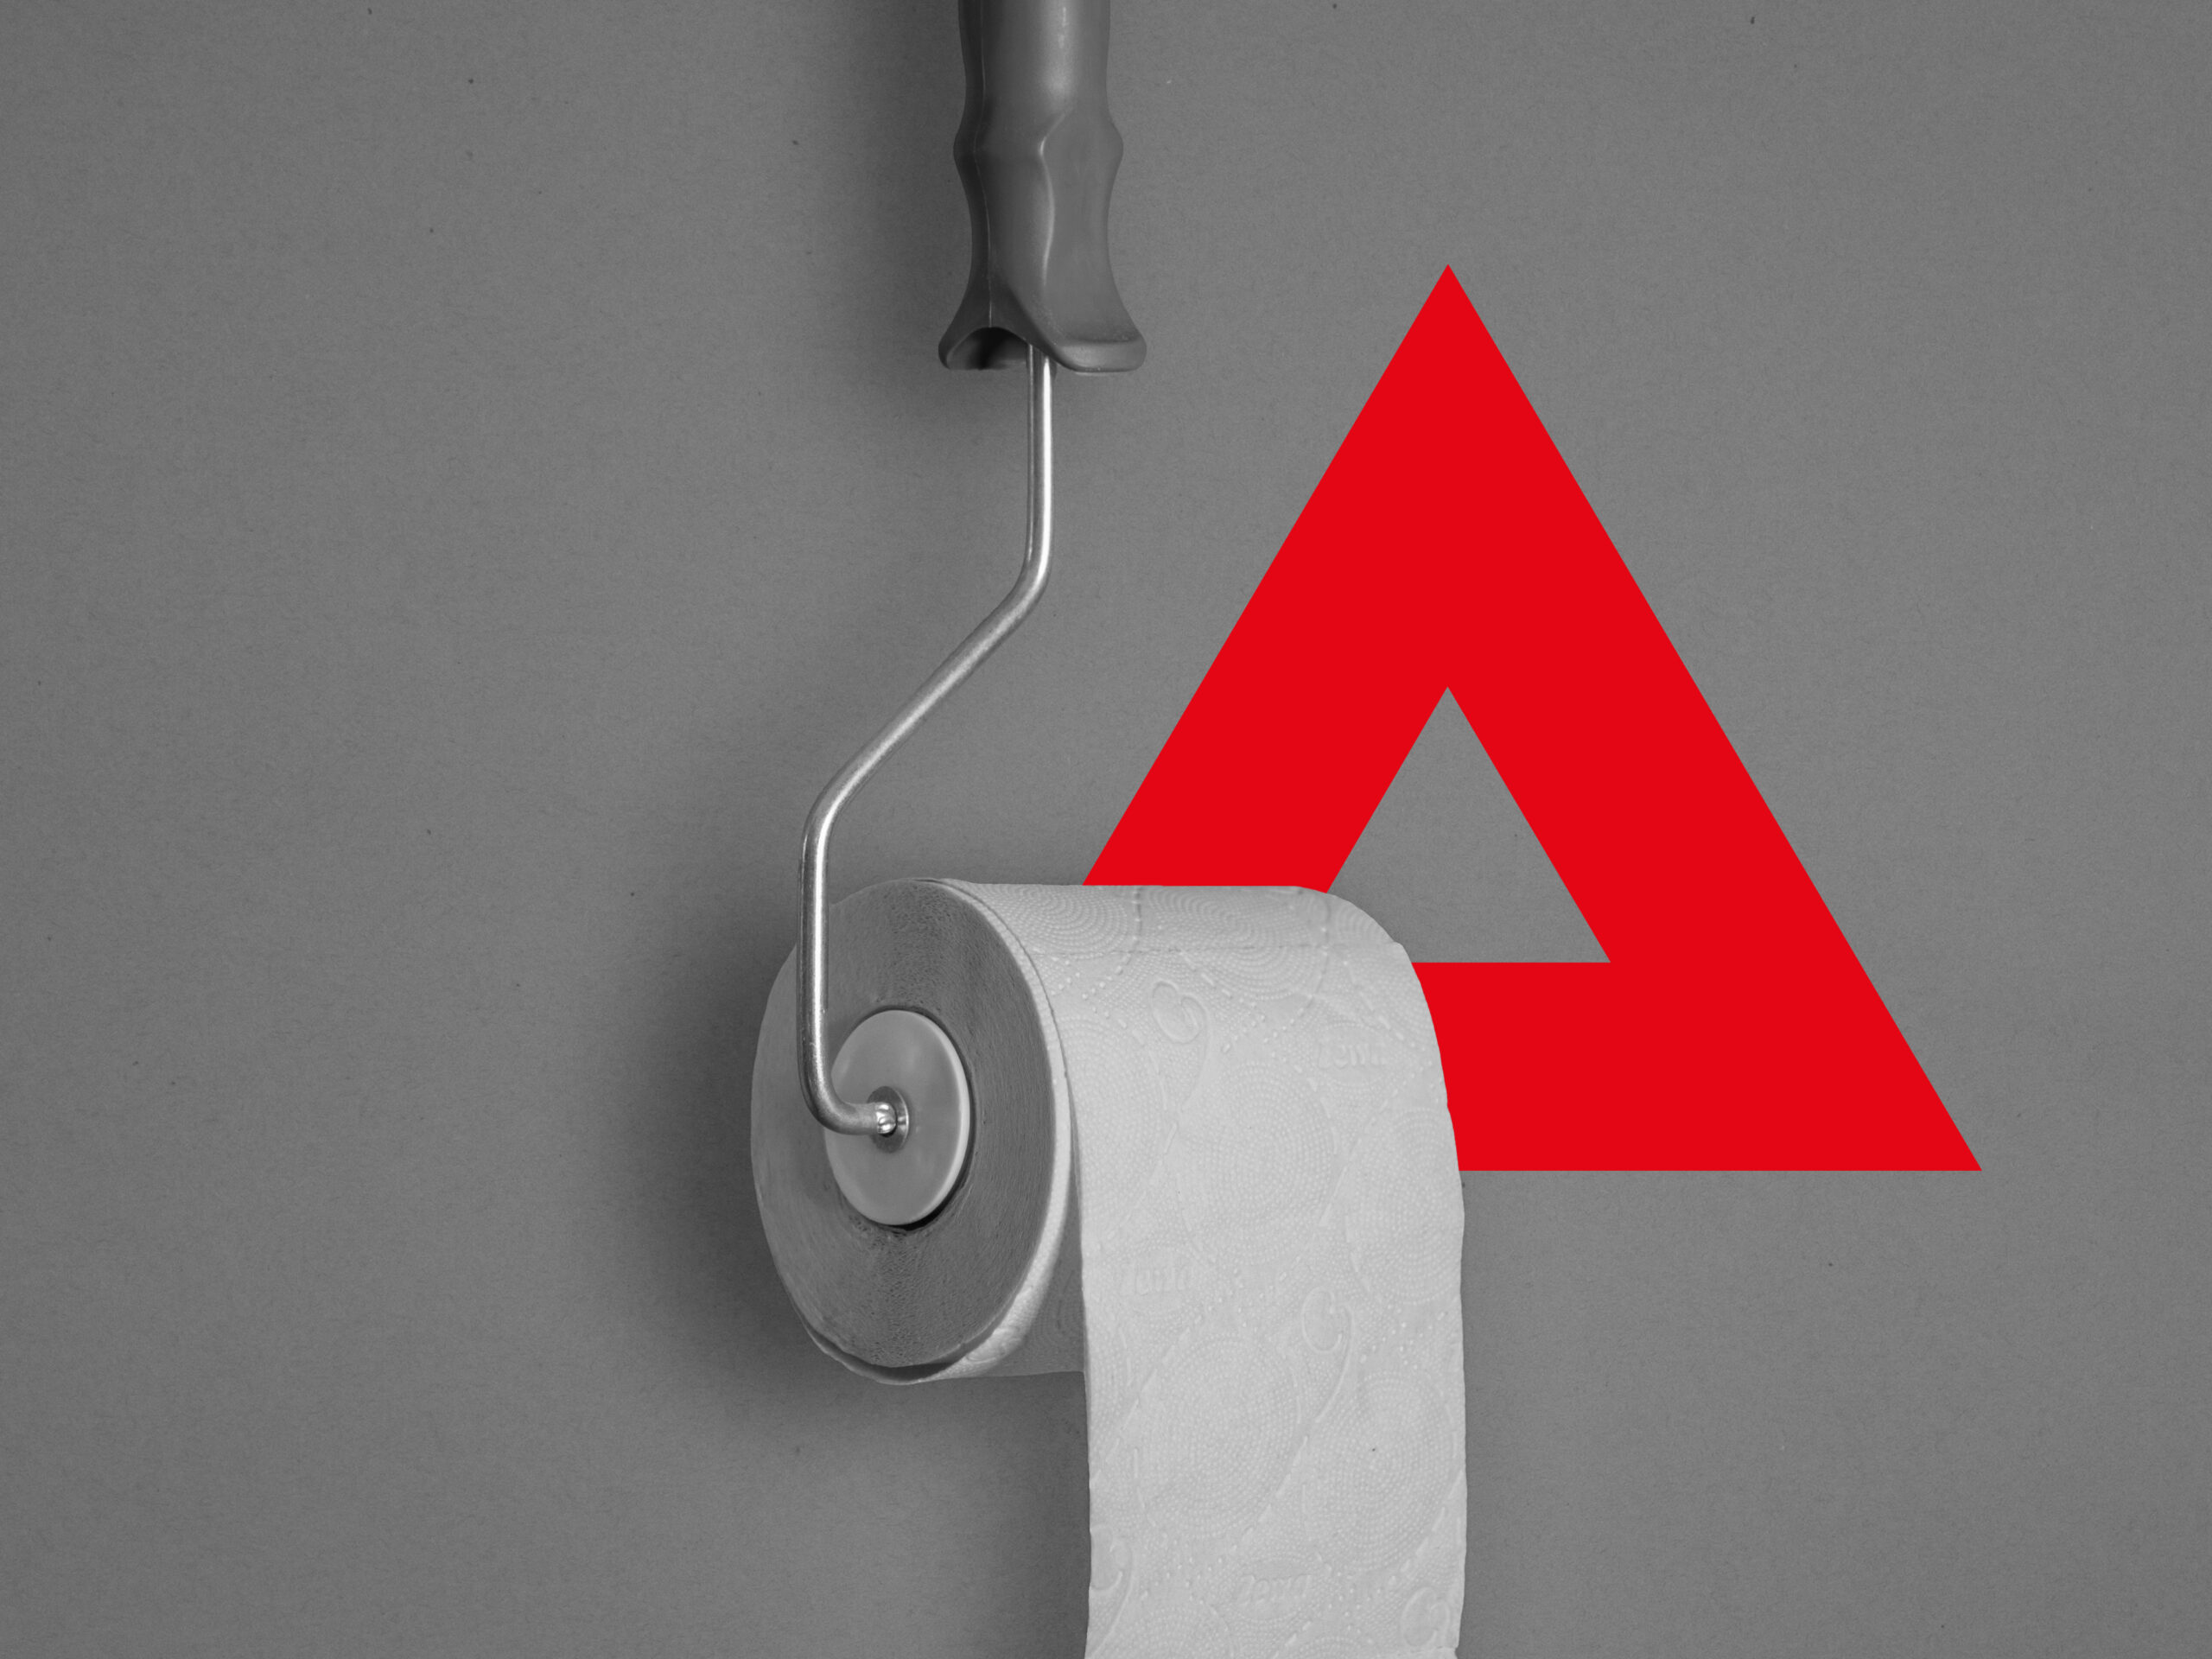 Toilettenpapier und Big Data